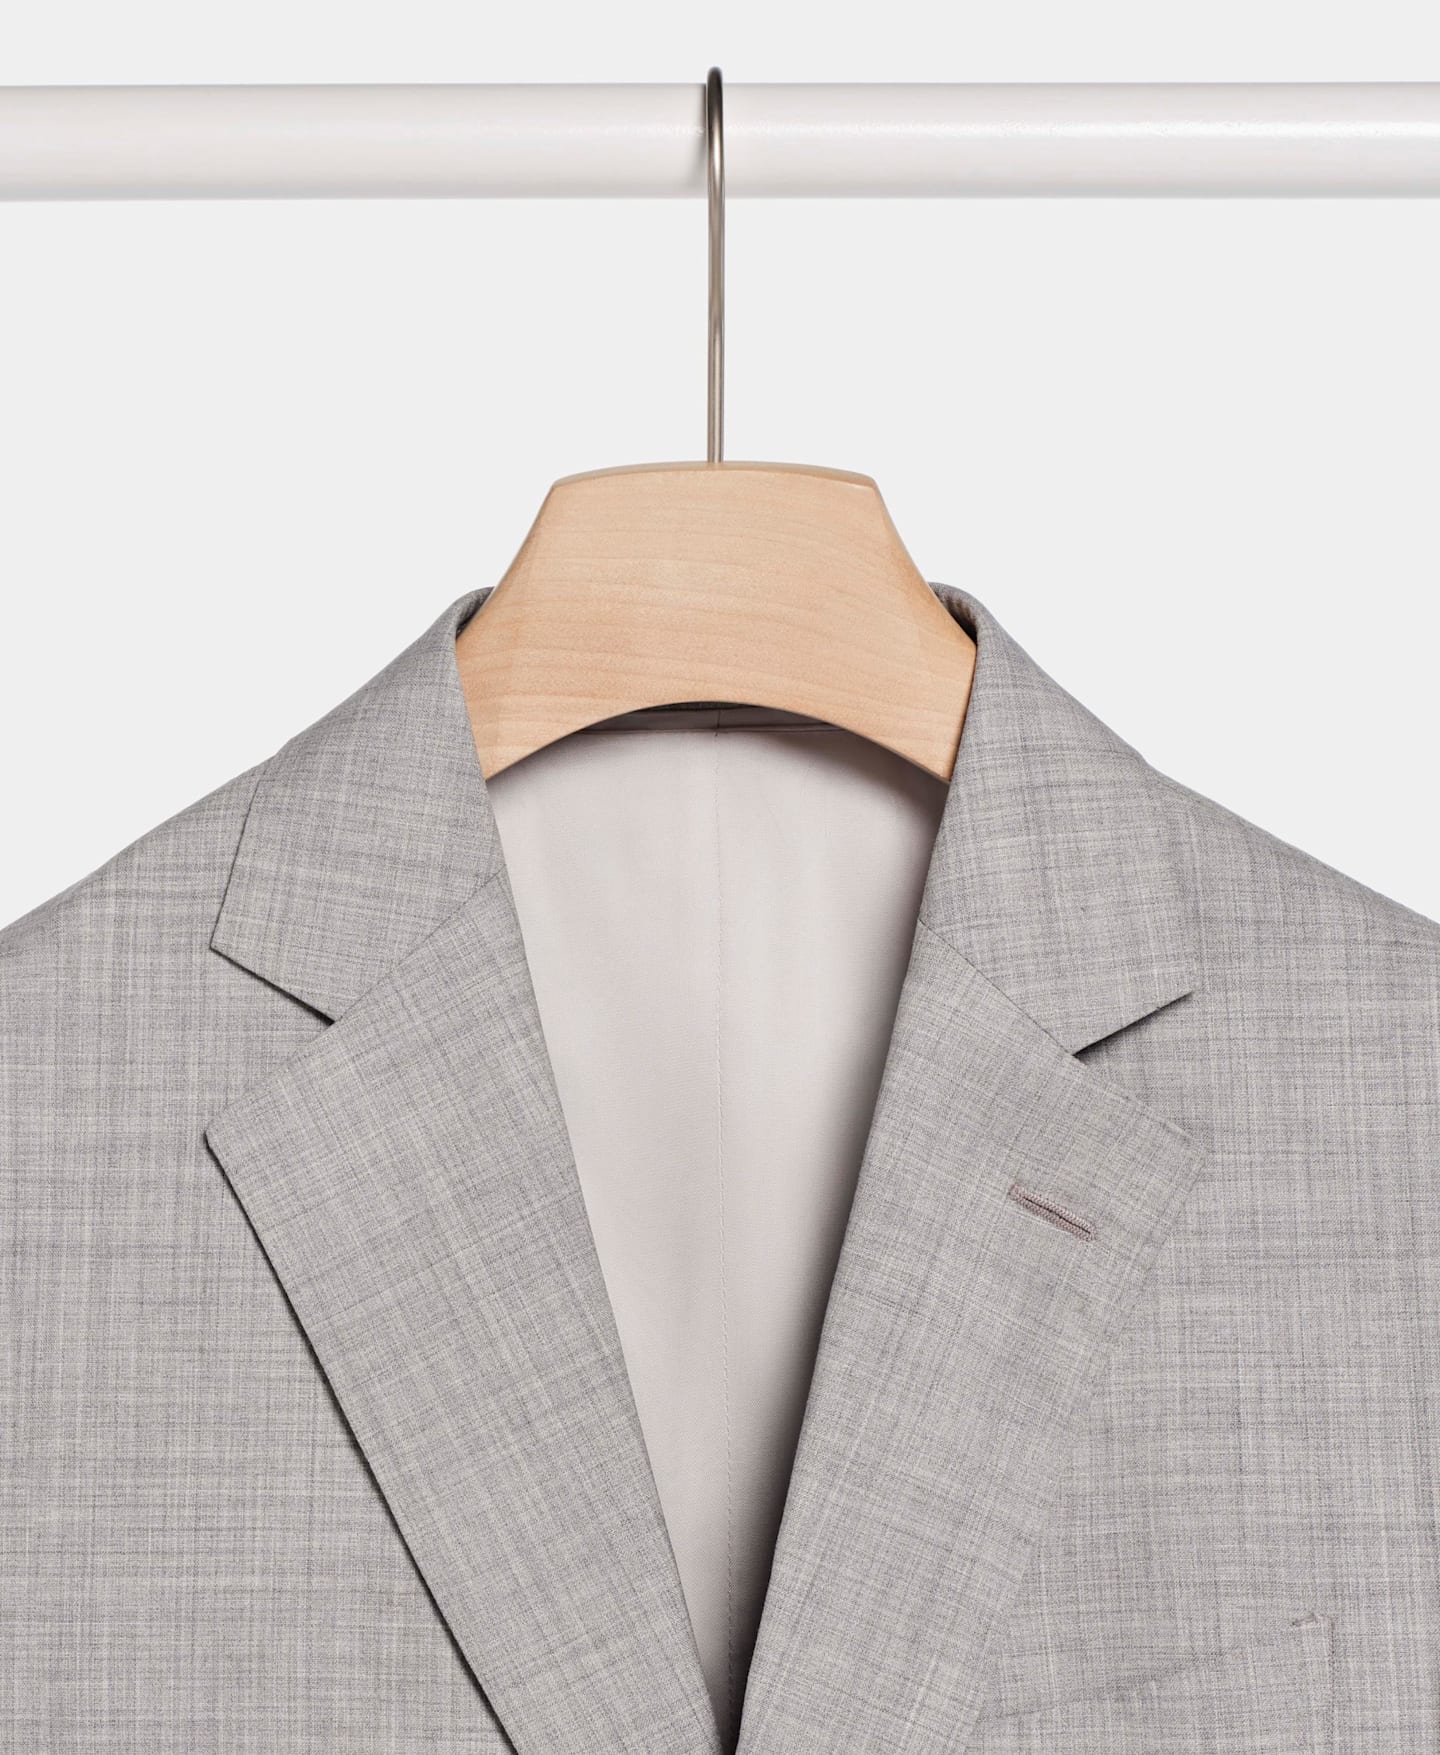 Imagen detallada de un blazer de traje gris claro colgado de una percha de madera